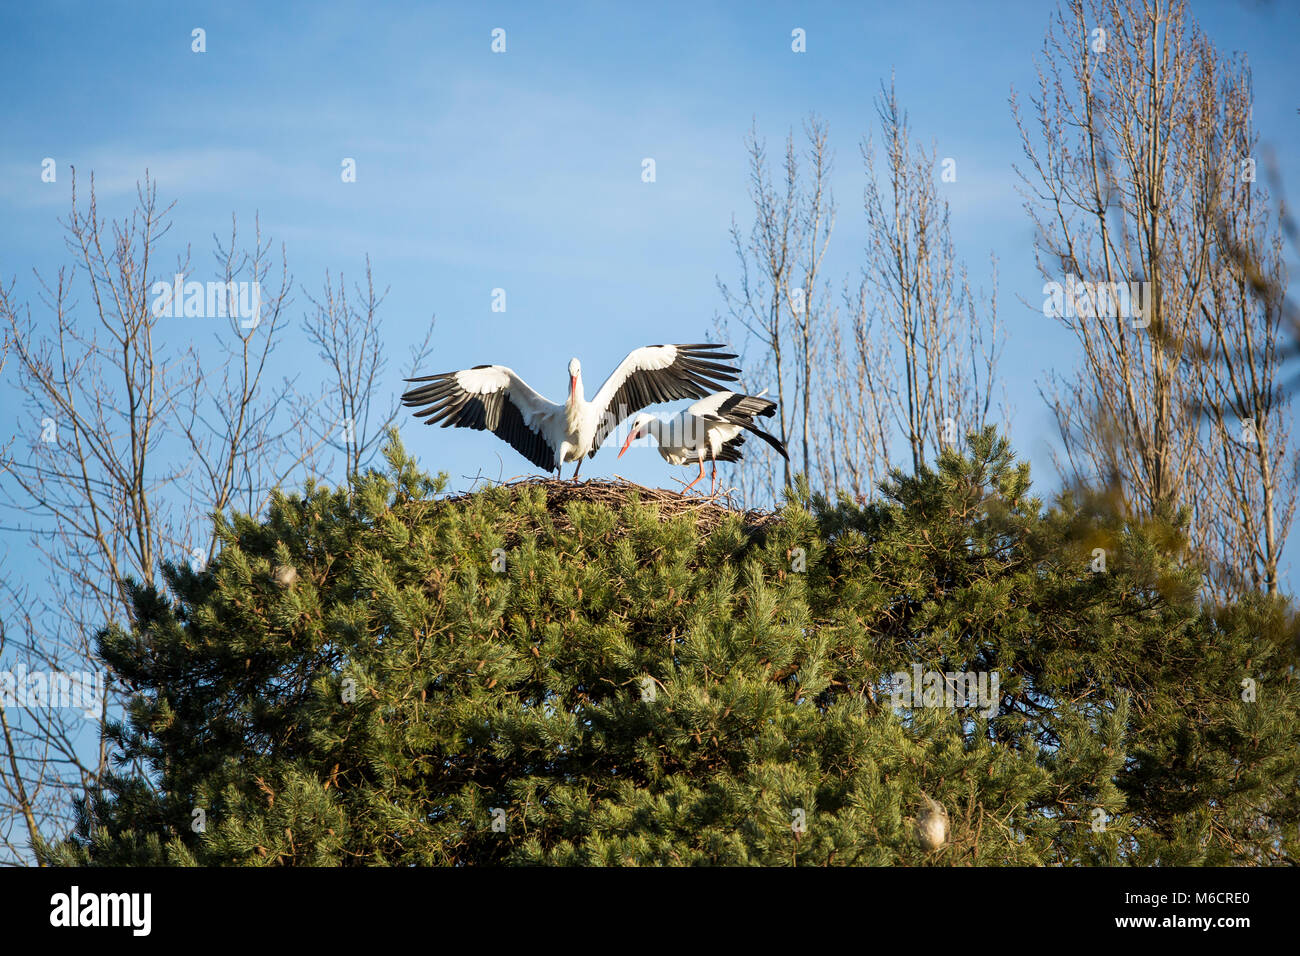 Deux cigognes debout tout en haut dans un nid. L'un d'eux vient d'arriver et a ses ailes déployées. Banque D'Images